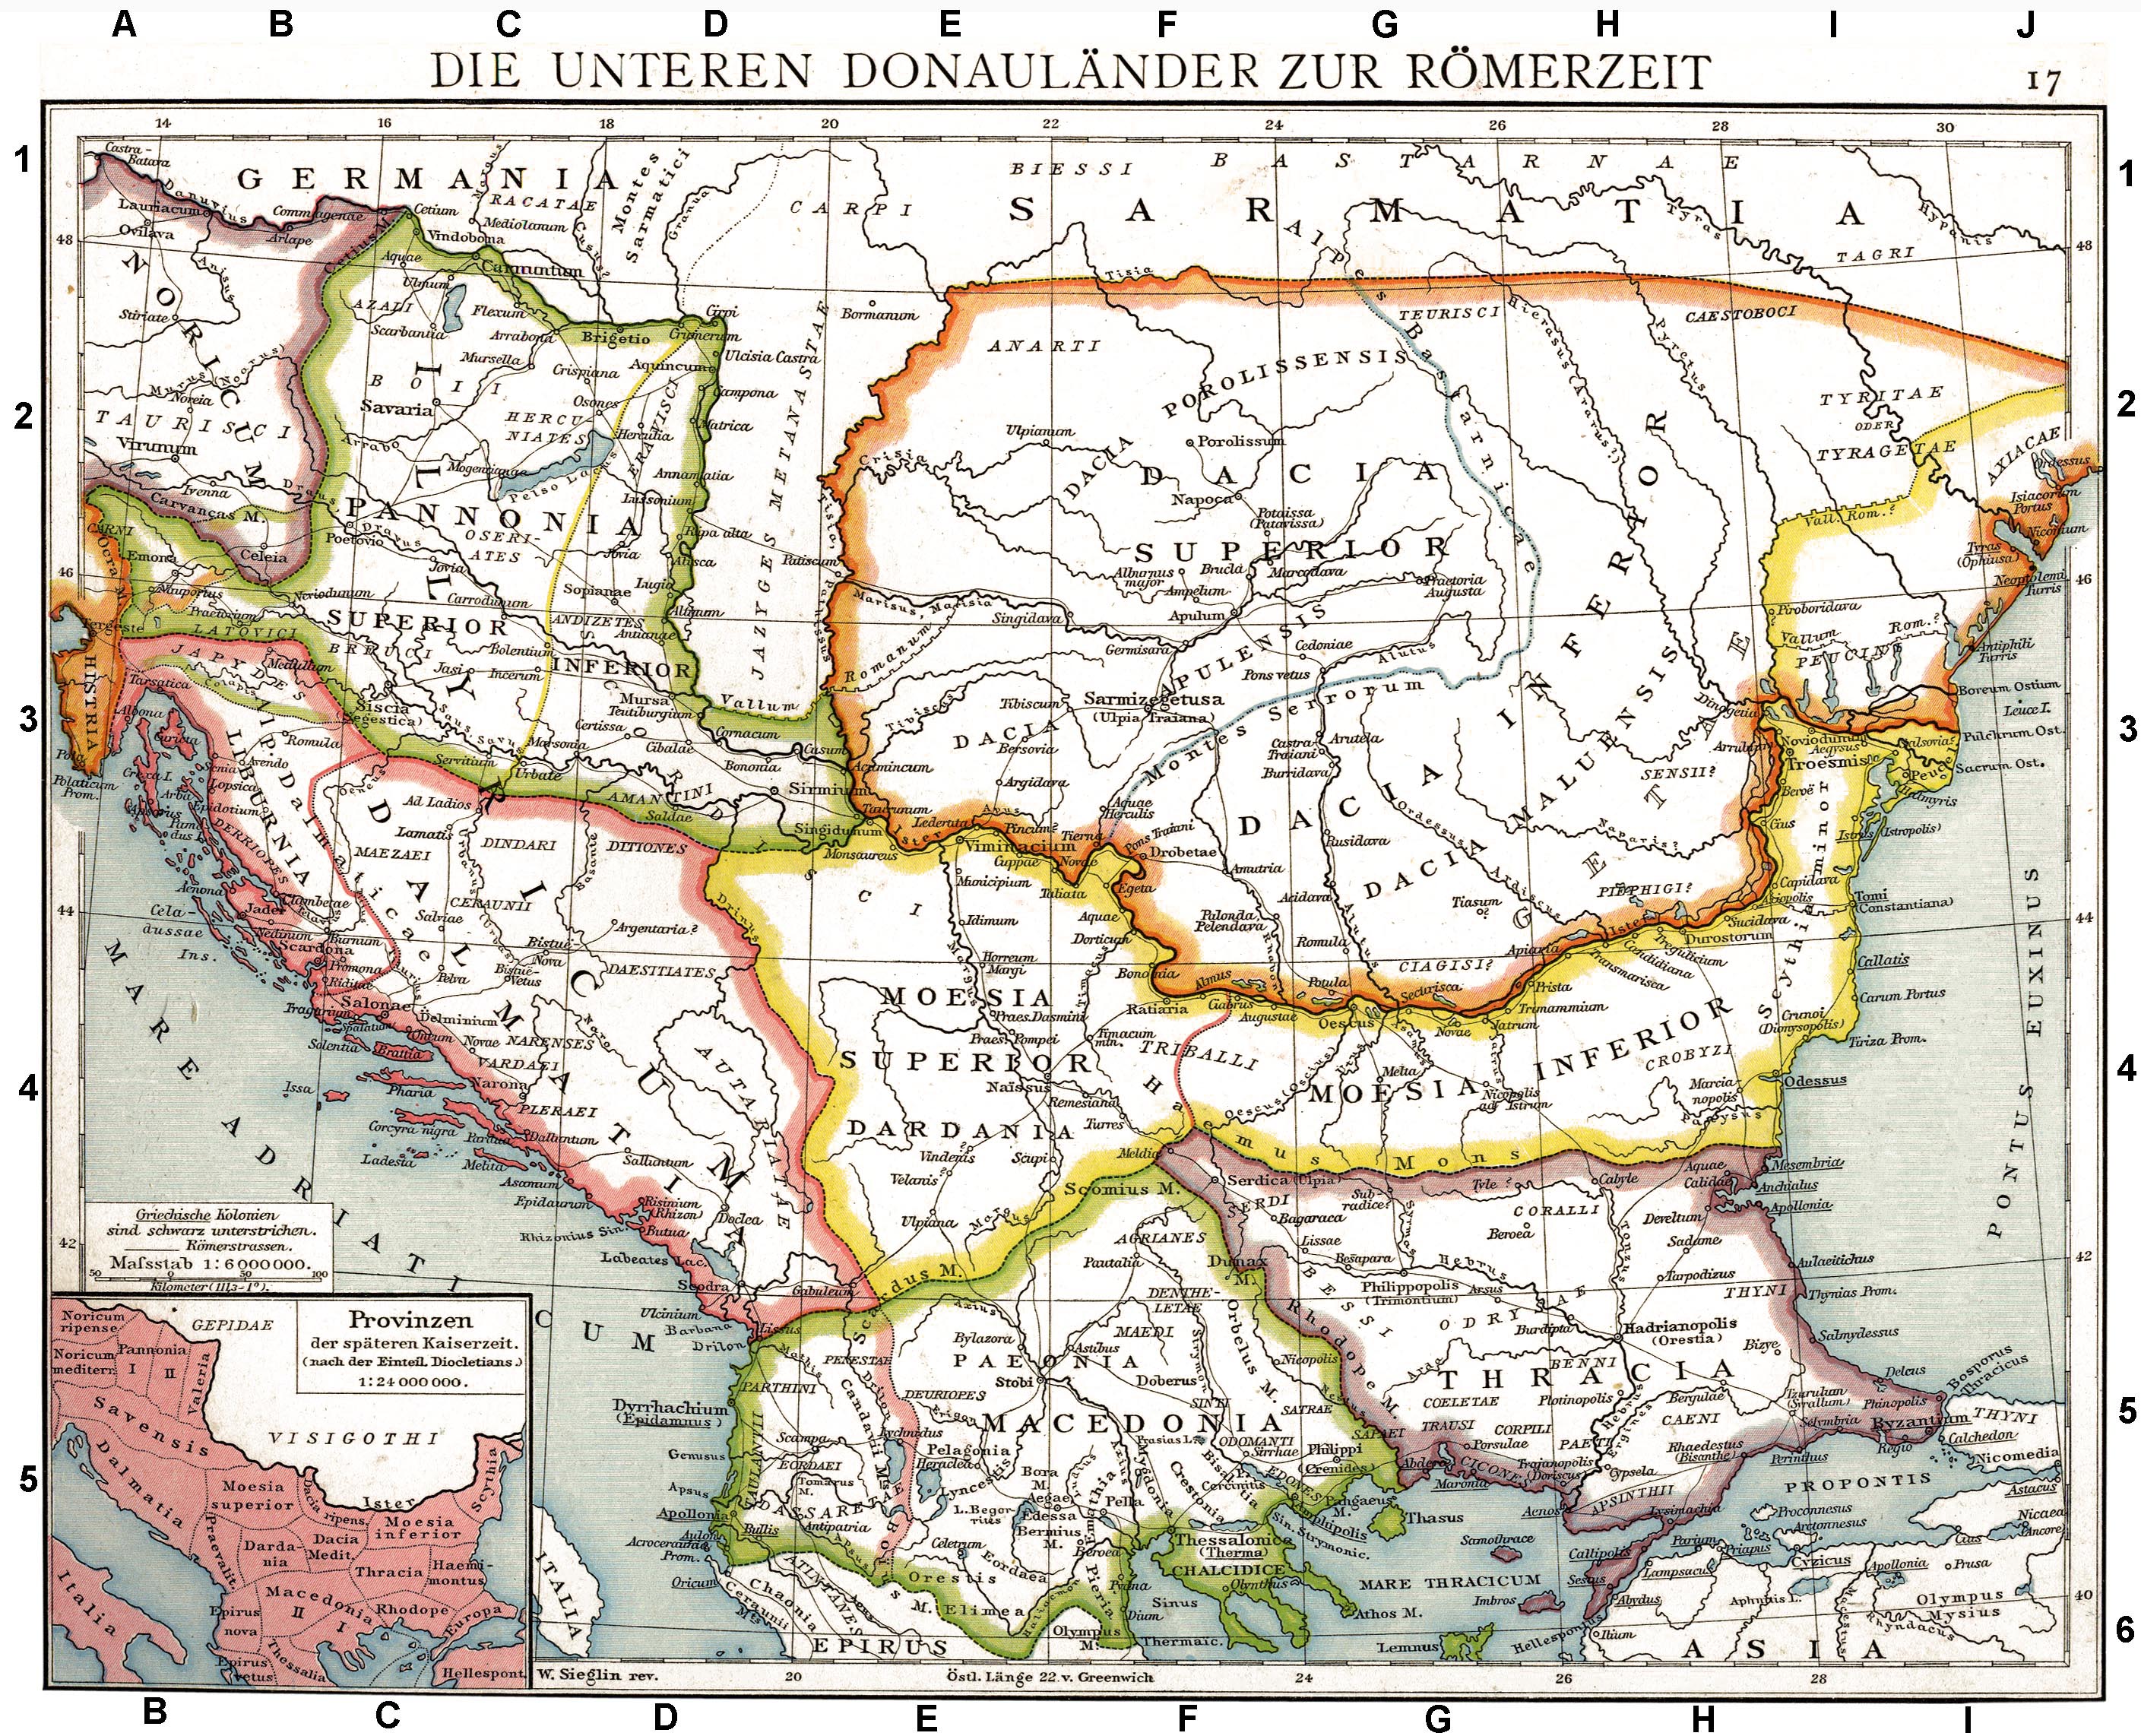 Срби су живели у Далмацији и Панонији још у 4. веку, када Хрвата нигде није било